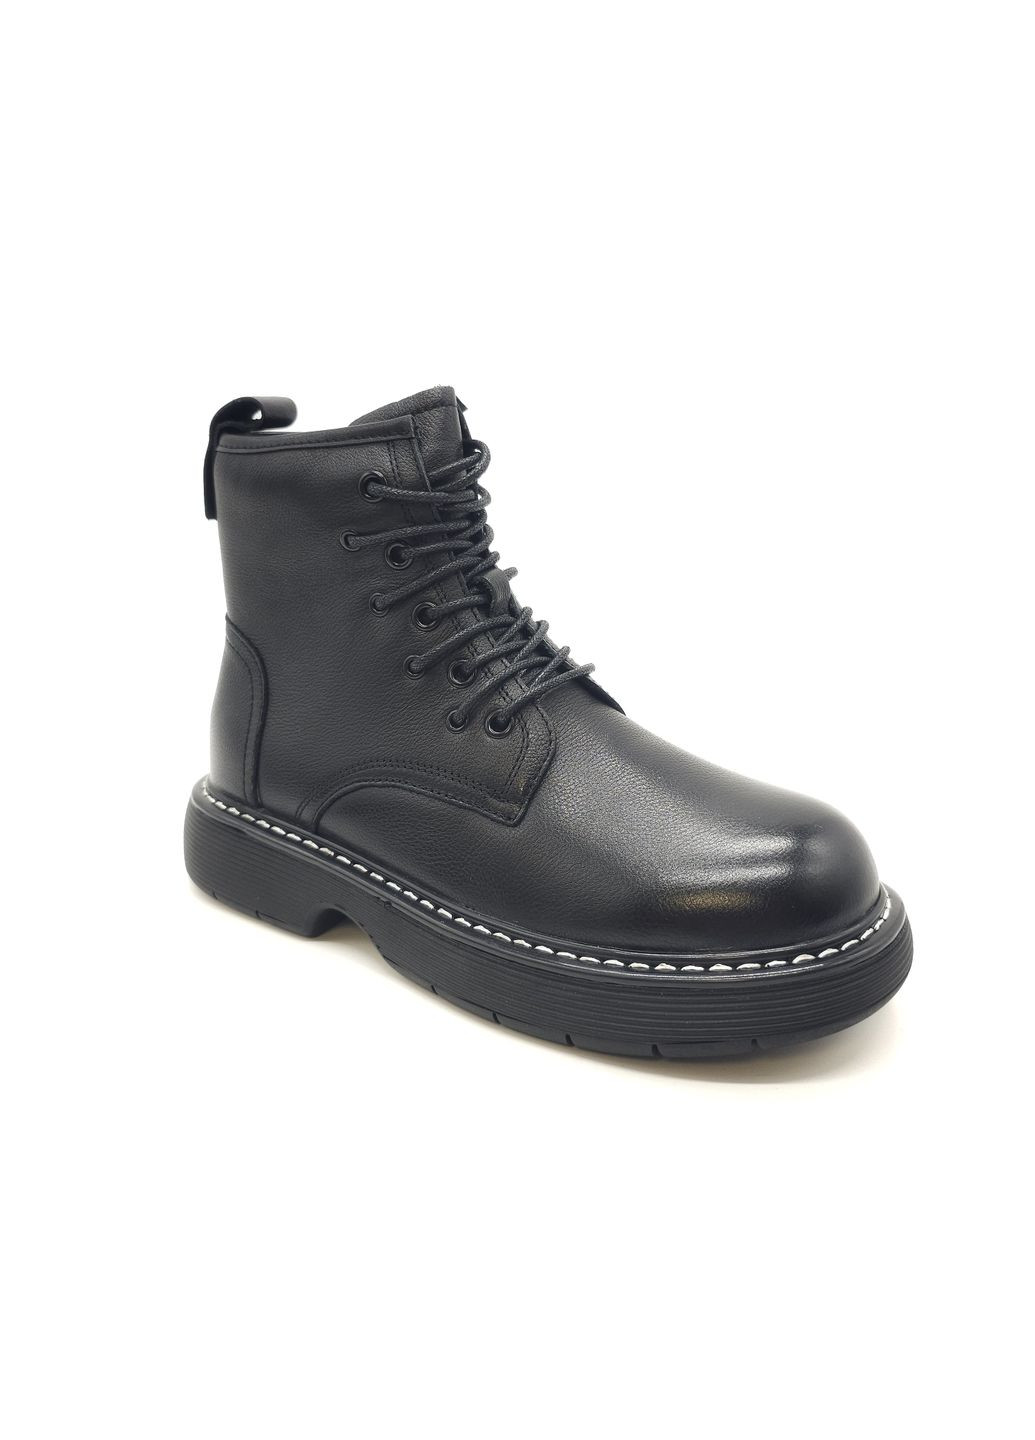 Осенние женские ботинки черные кожаные bv-13-13 23 см (р) Boss Victori